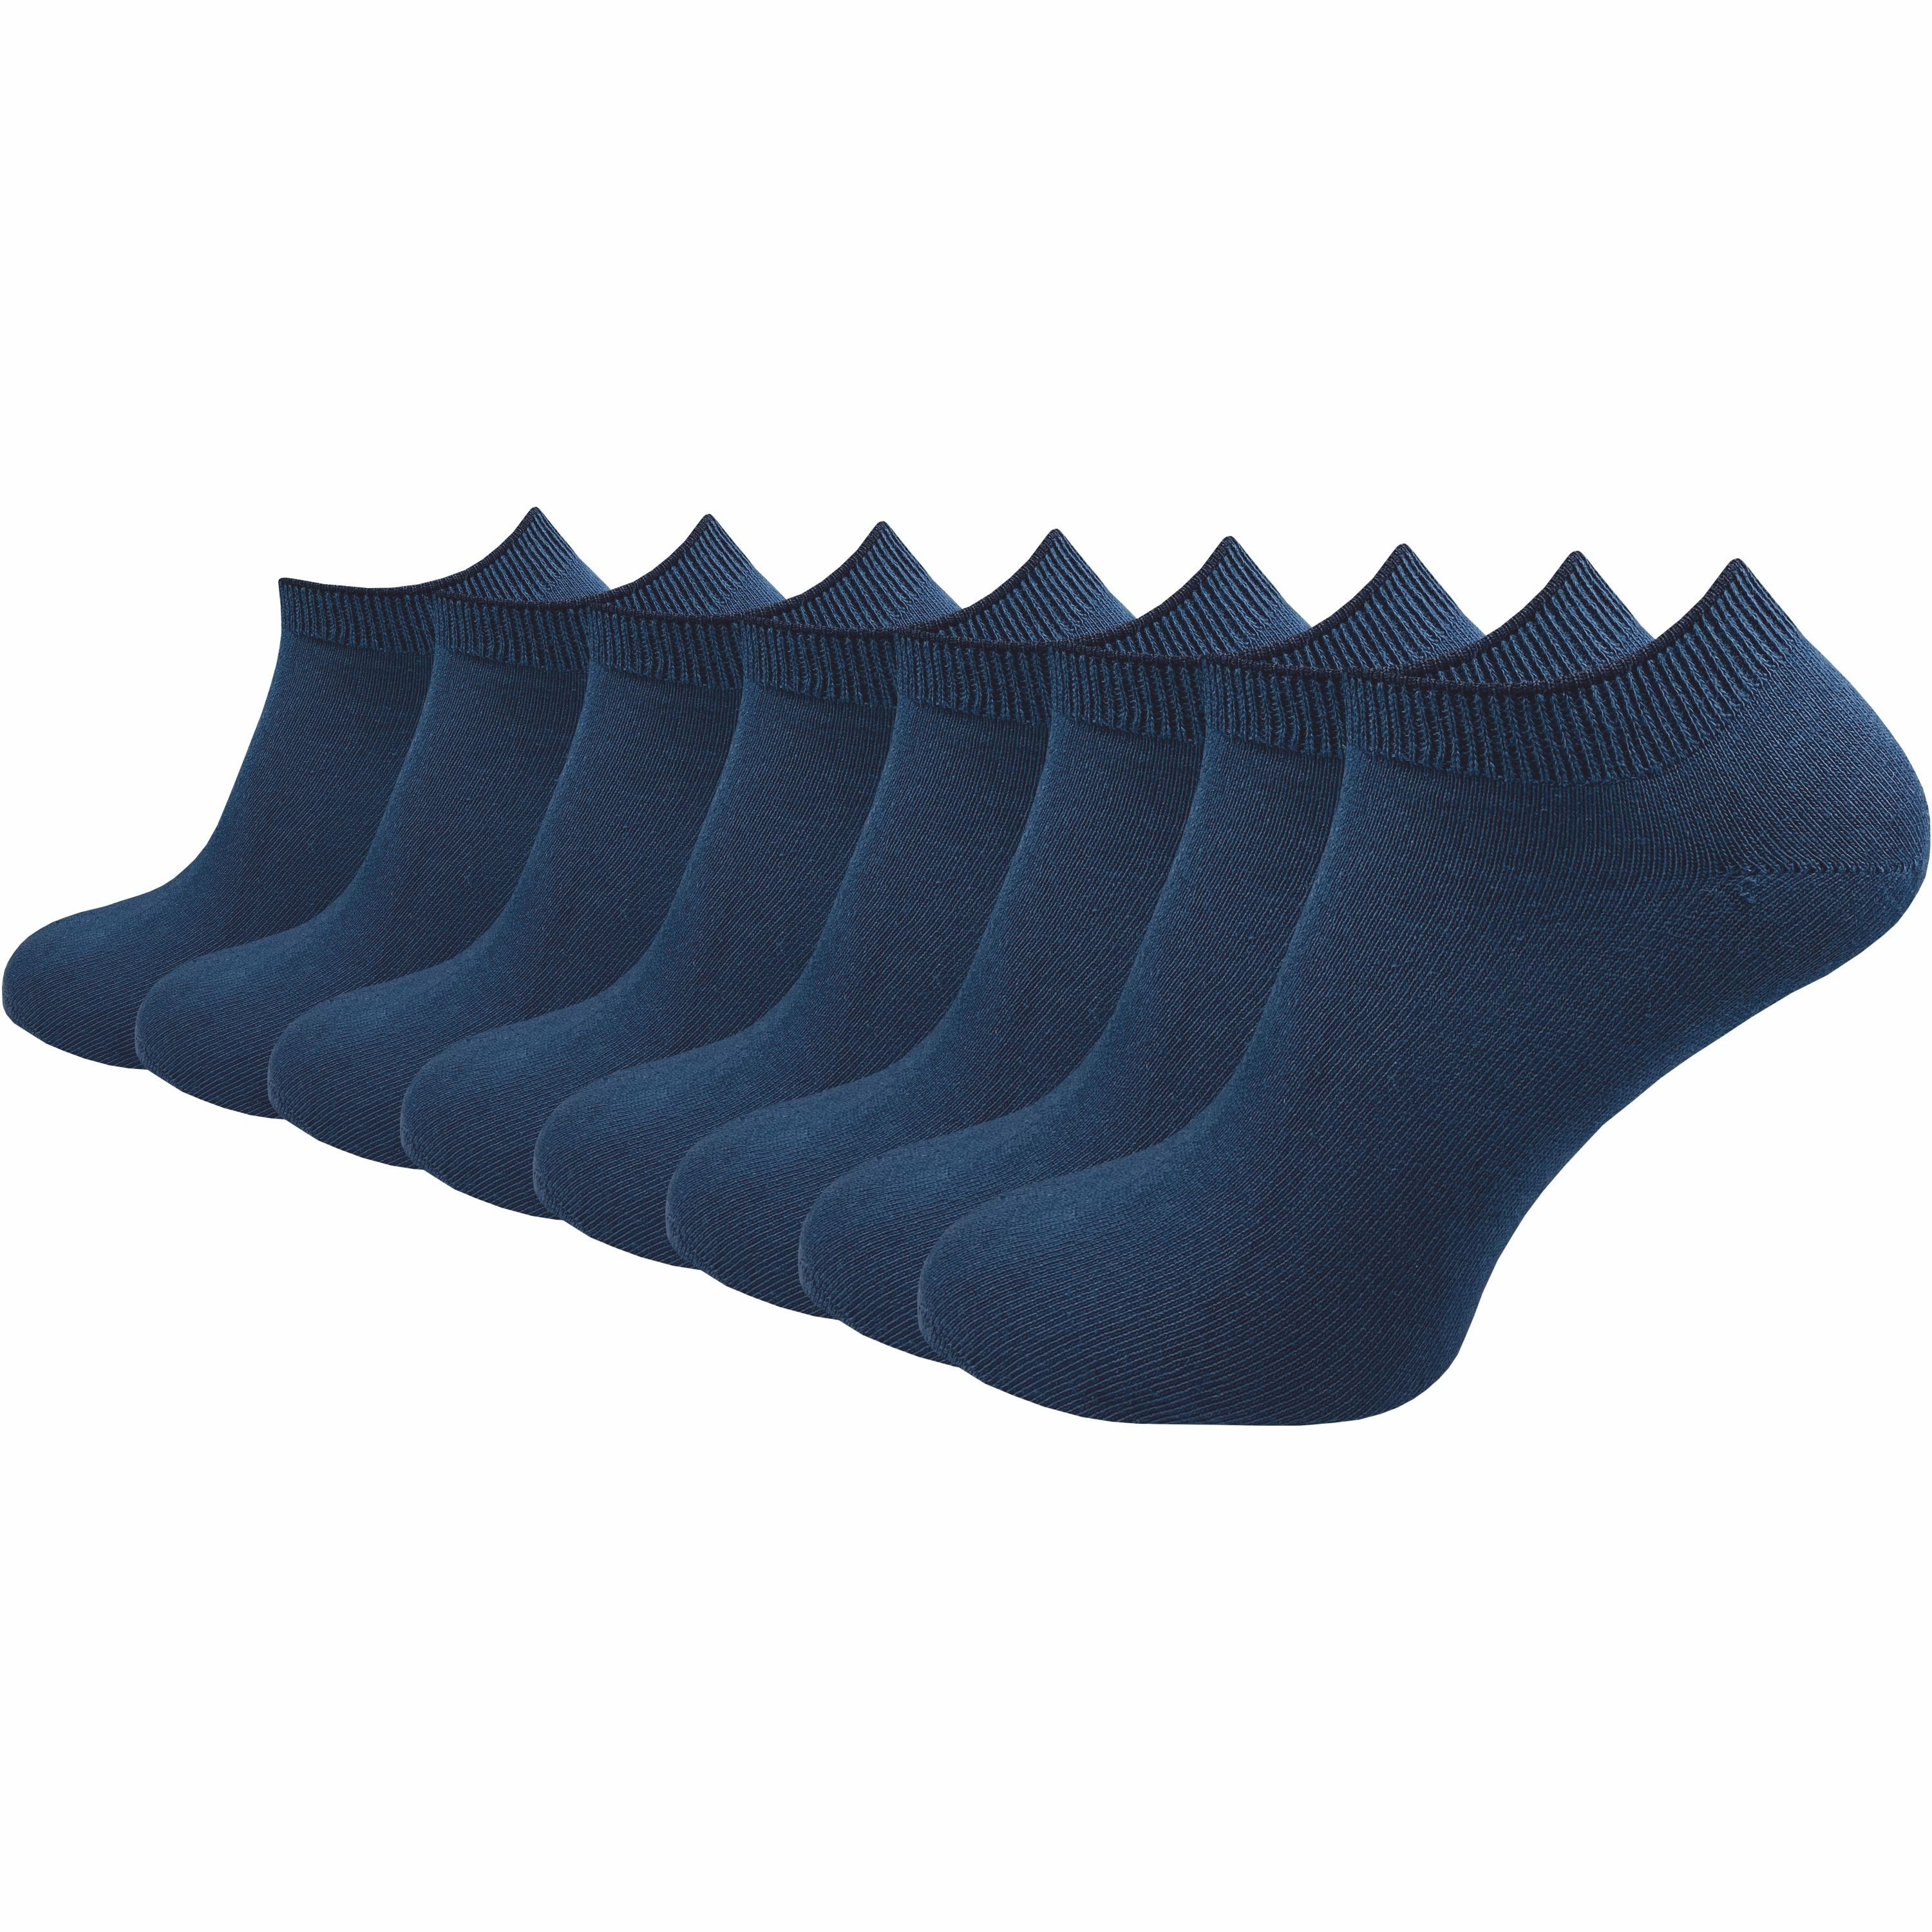 GAWILO Sneakersocken "Natur" für Damen & Herren aus 100% Baumwolle u.a. in grau & blau (8 Paar) angenehmer, enganliegender Sitz - bitte eine Nummer größer bestellen